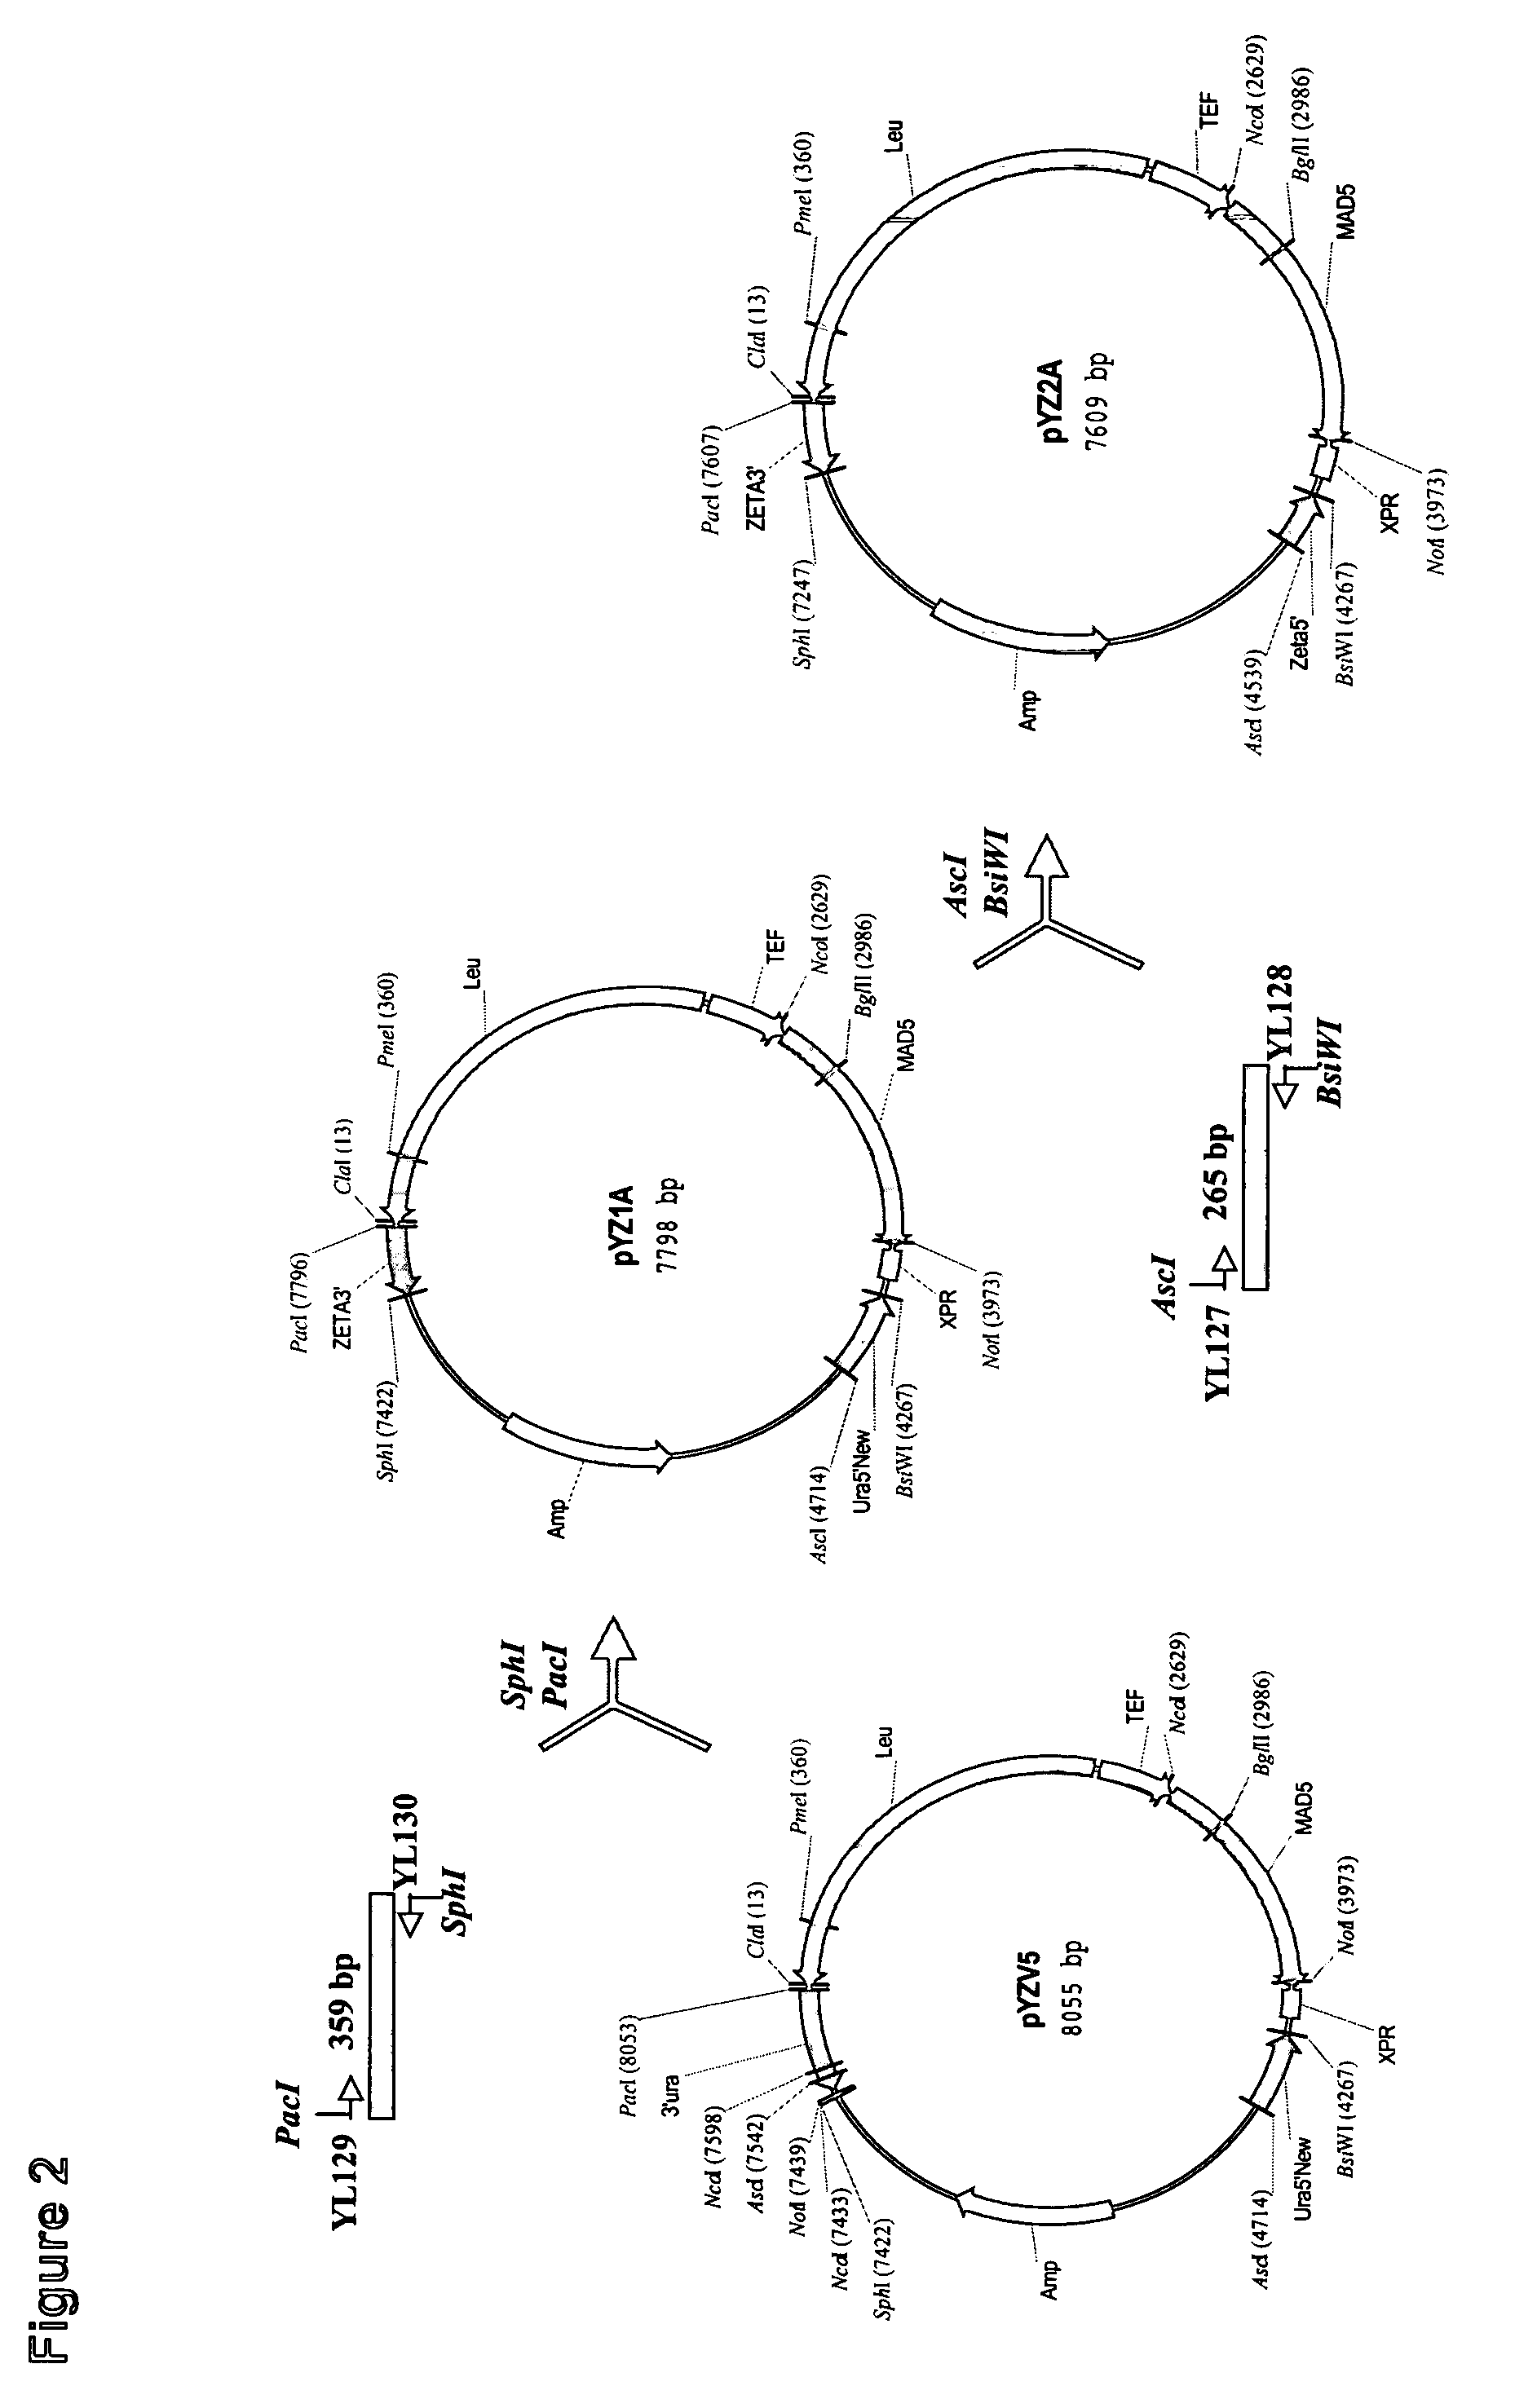 Production of gamma-linolenic acid in oleaginous yeast